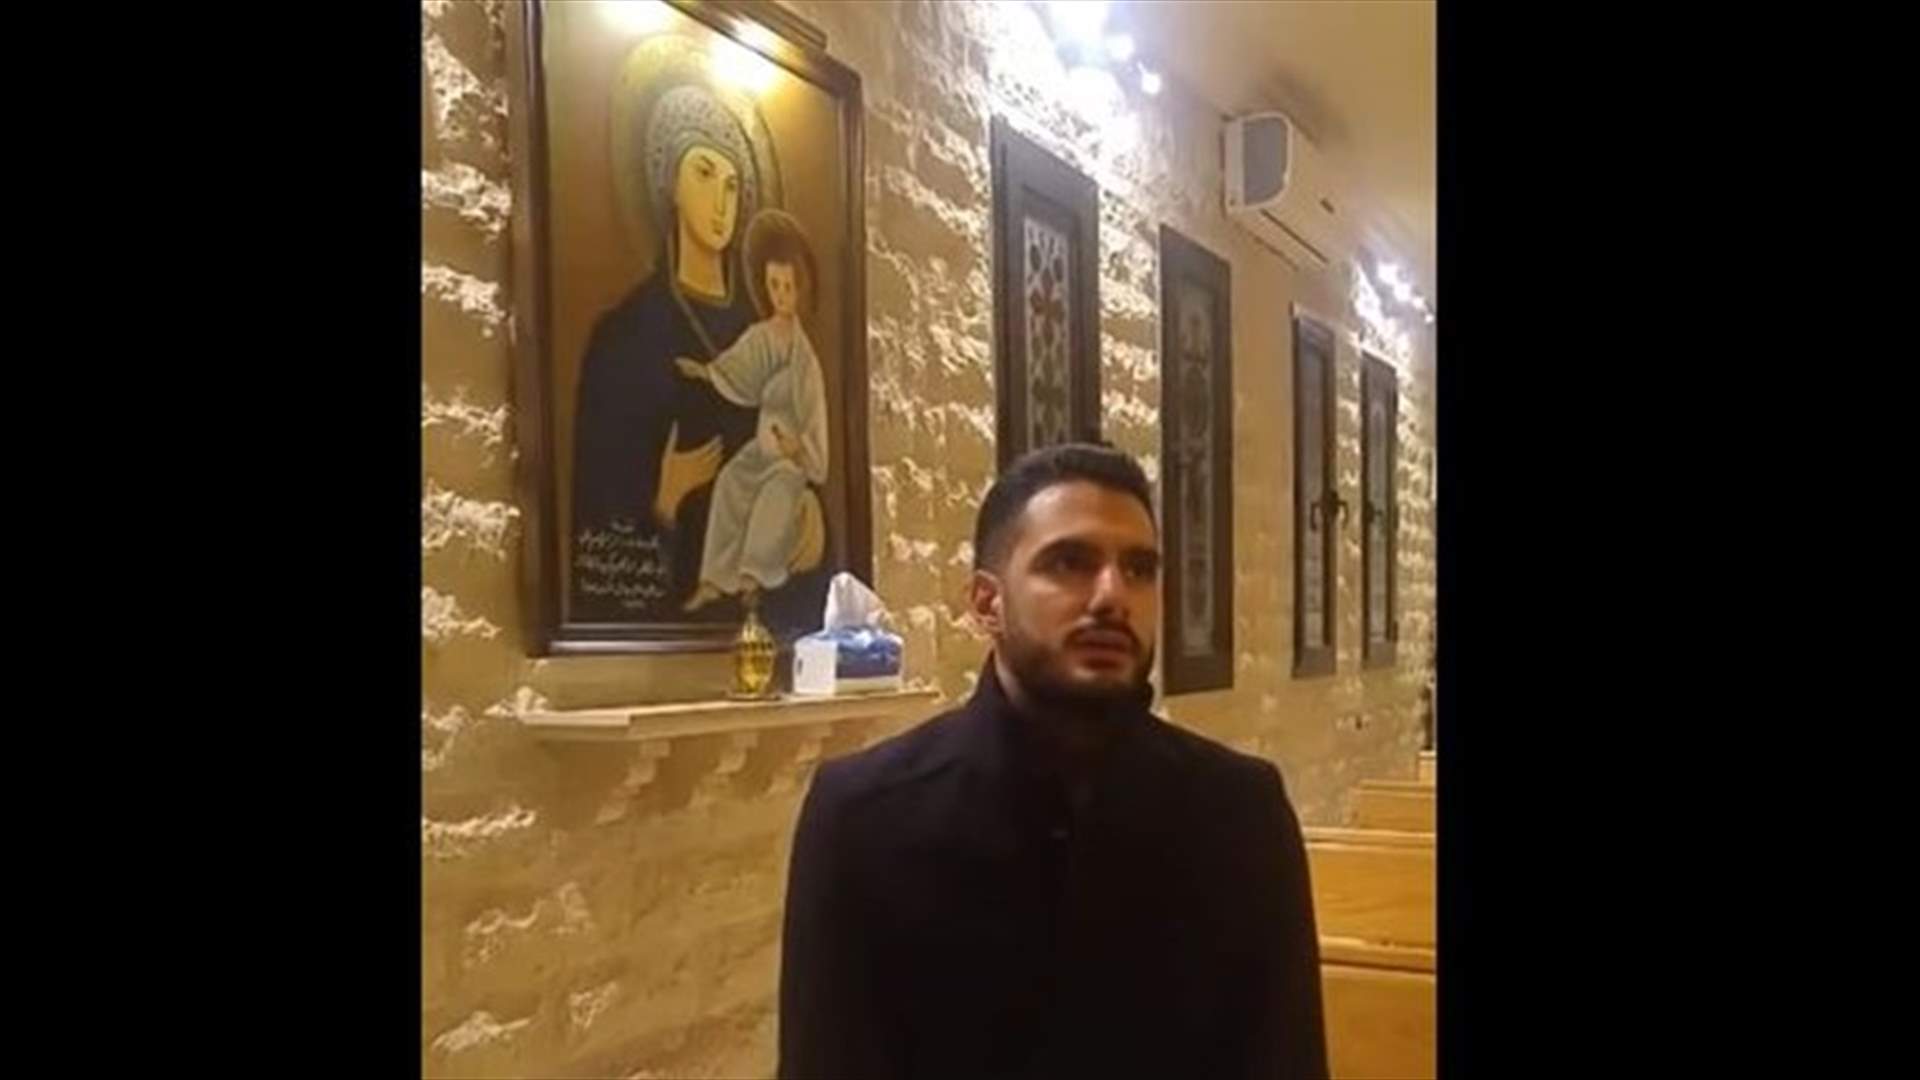 بالفيديو: المشترك في نهائيات أراب آيدول يصلّي.. ويرنّم &quot;يا سيدي كم كان قاسياً&quot;